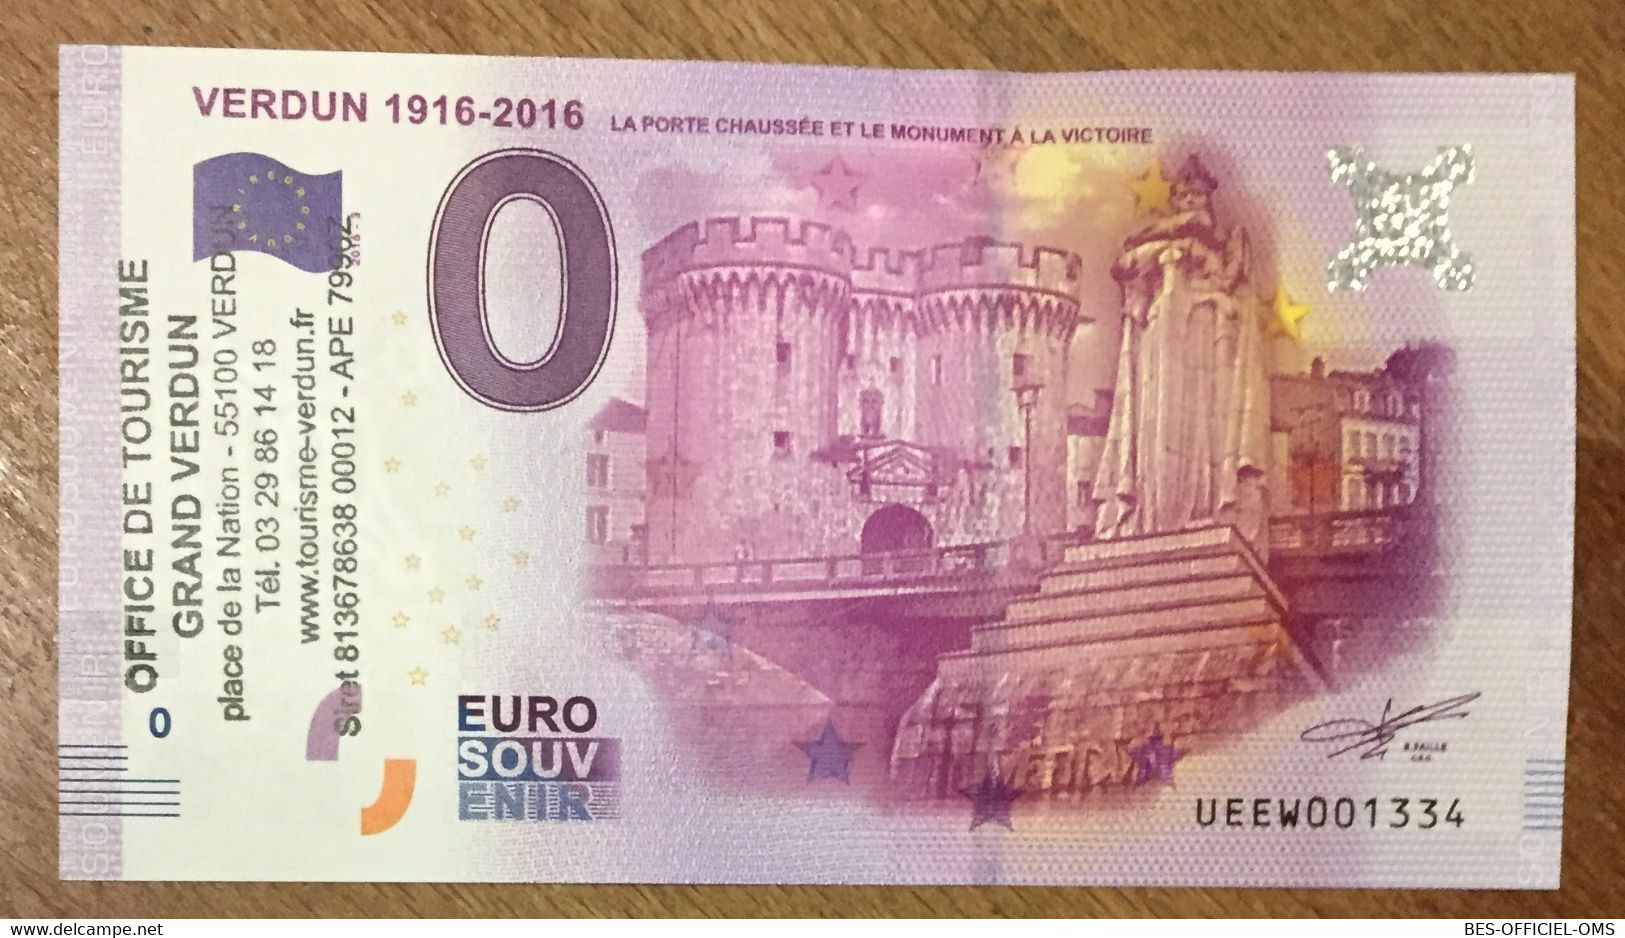 2016 BILLET 0 EURO SOUVENIR DPT 55 VERDUN 1916 - 2016 + TAMPON ZERO 0 EURO SCHEIN BANKNOTE PAPER MONEY BANK PAPER MONEY - Privatentwürfe